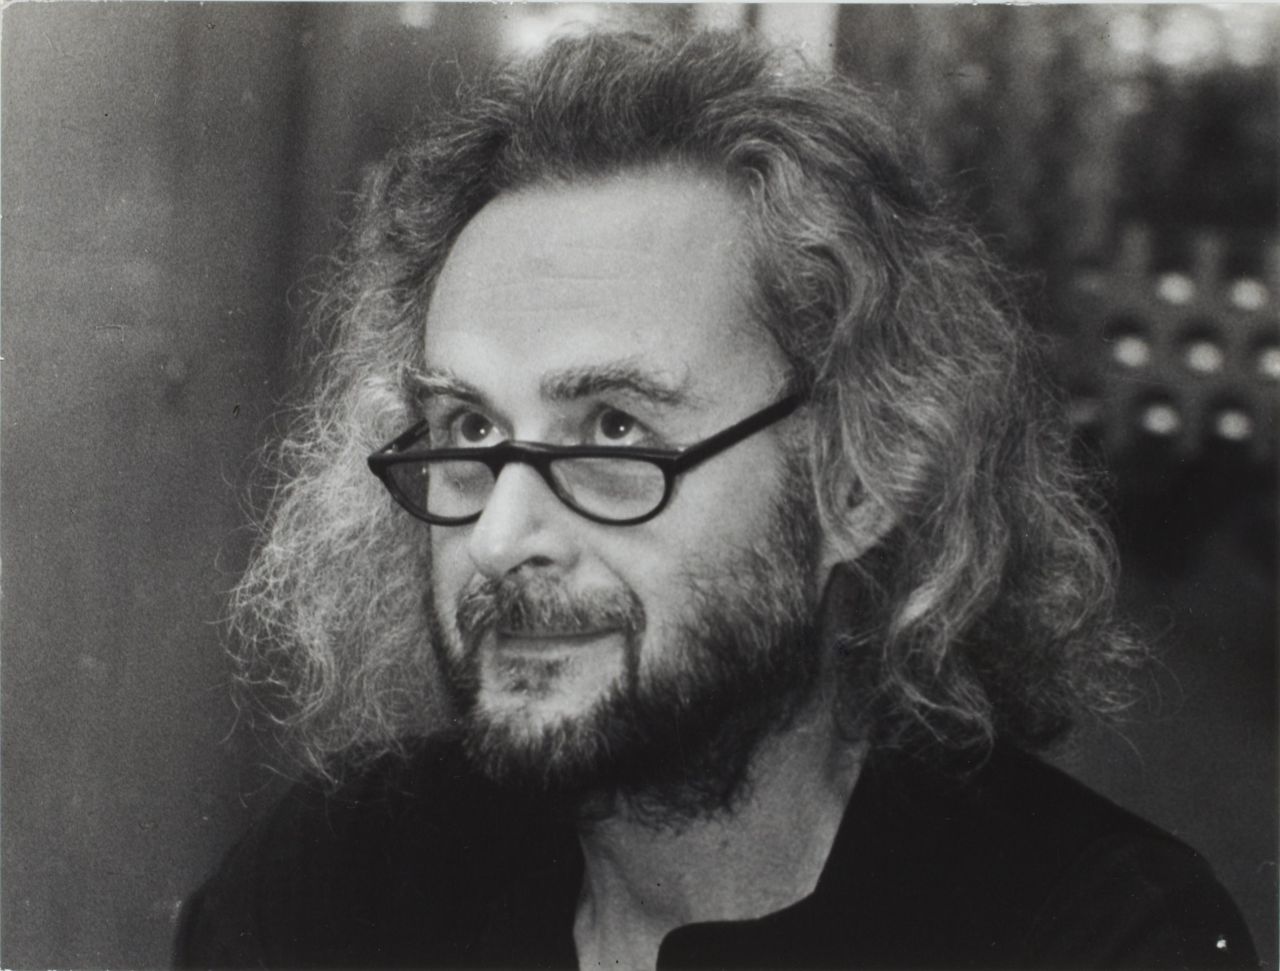 Porträtfoto des Schriftstellers und Drehbuchautors Ulrich Plenzdorf.